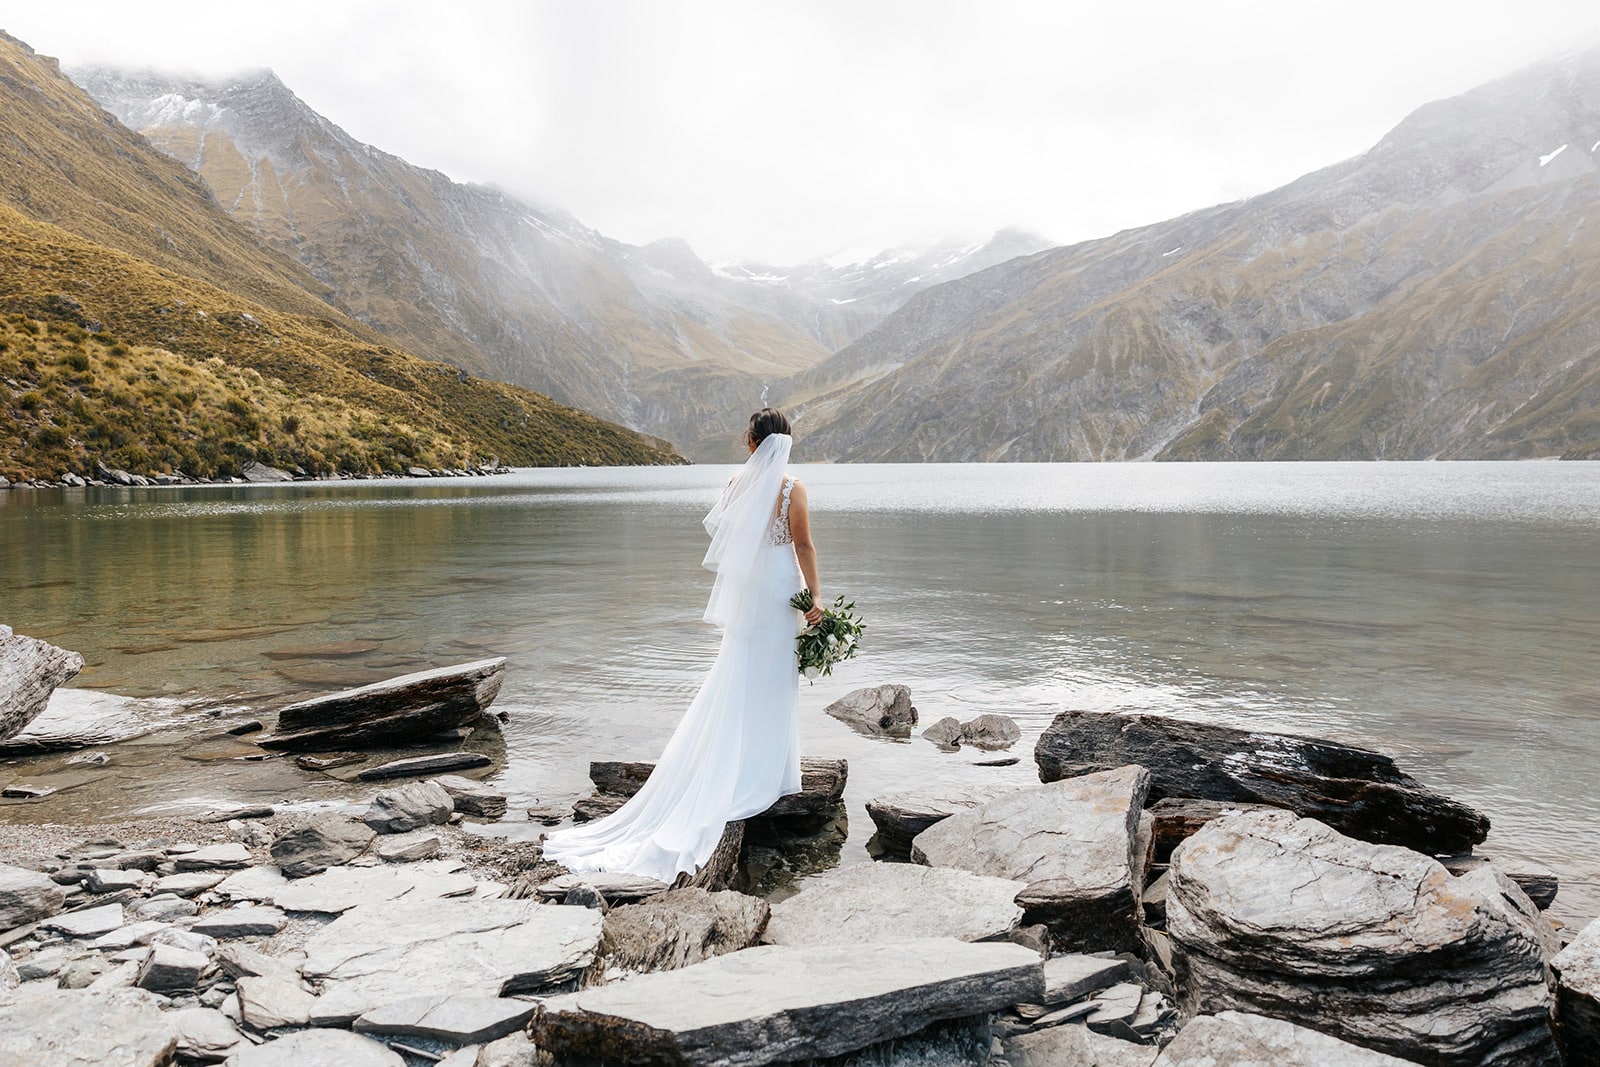 Heli Wedding at Lochnagar, Queenstown New Zealand